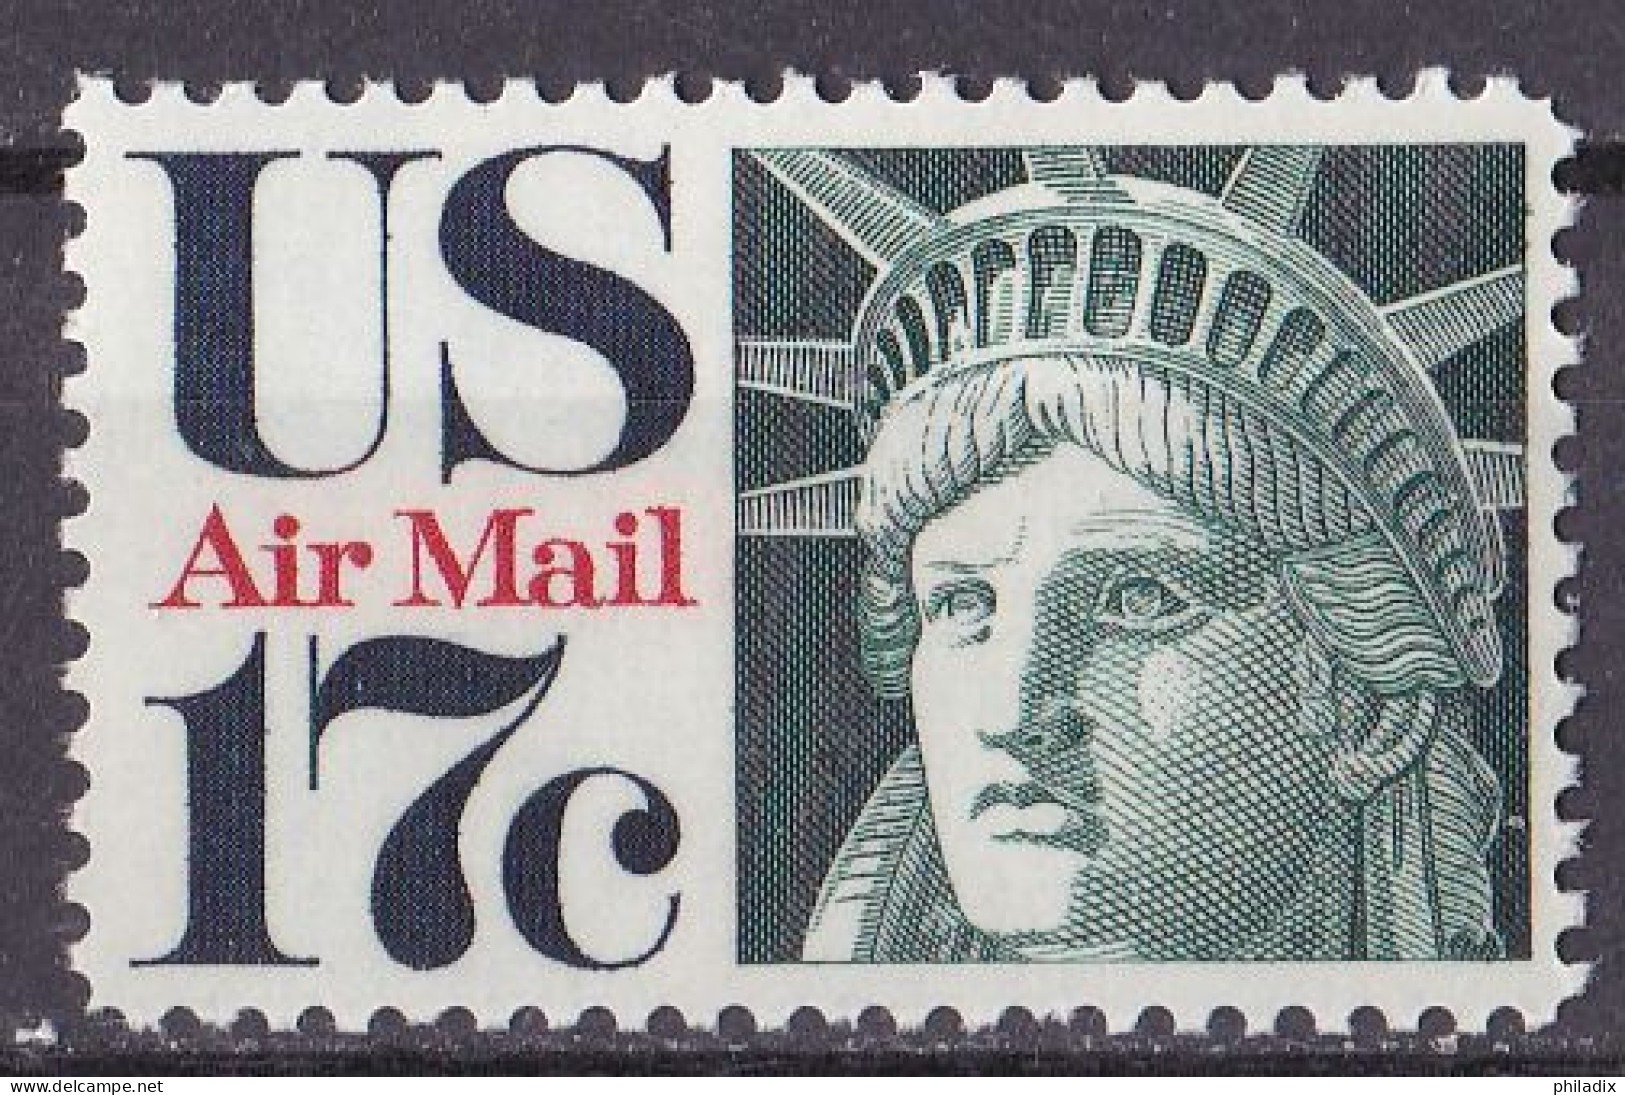 USA Marke Von 1971 **/MNH (A3-49) - Unused Stamps